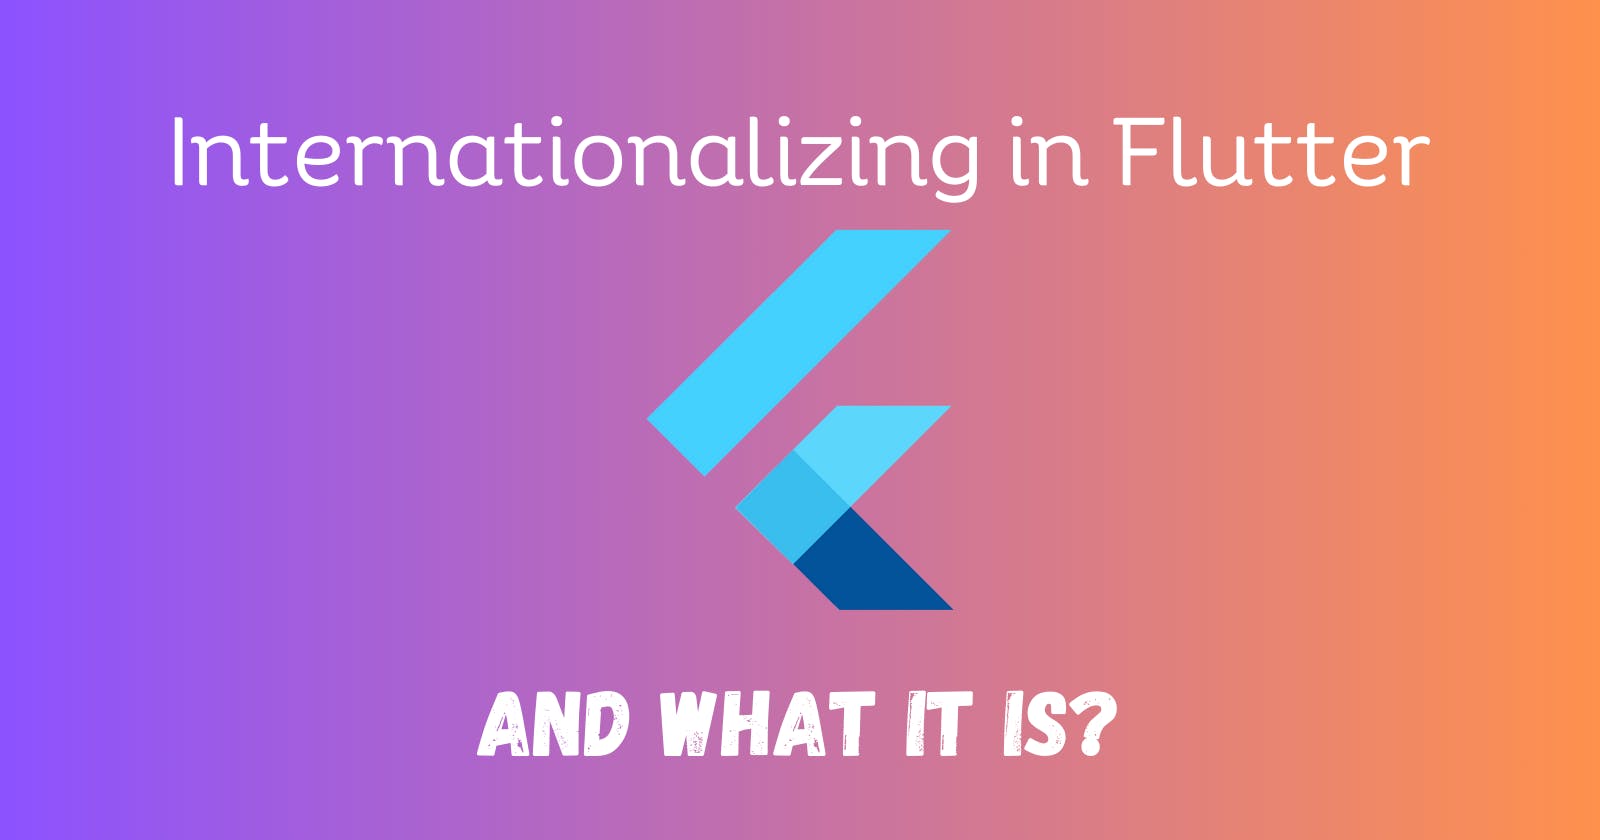 Let's understand Internationalizing in Flutter